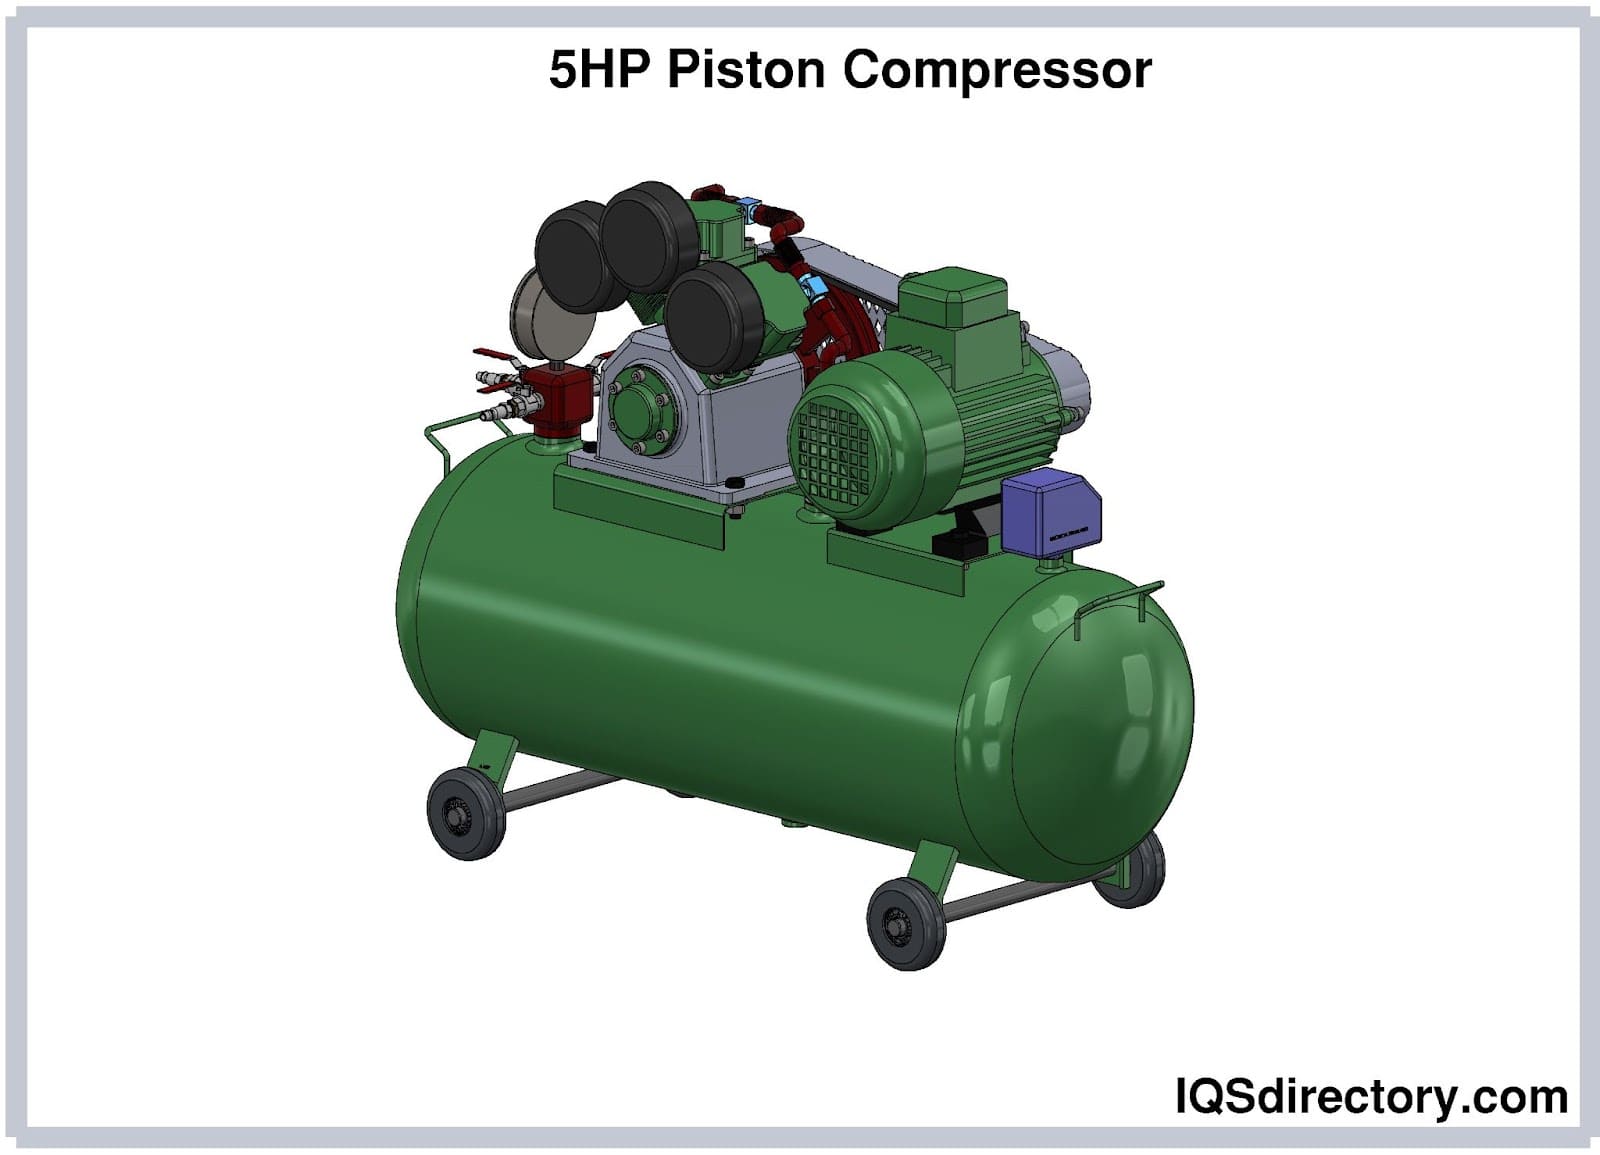 5HP Piston Compressor